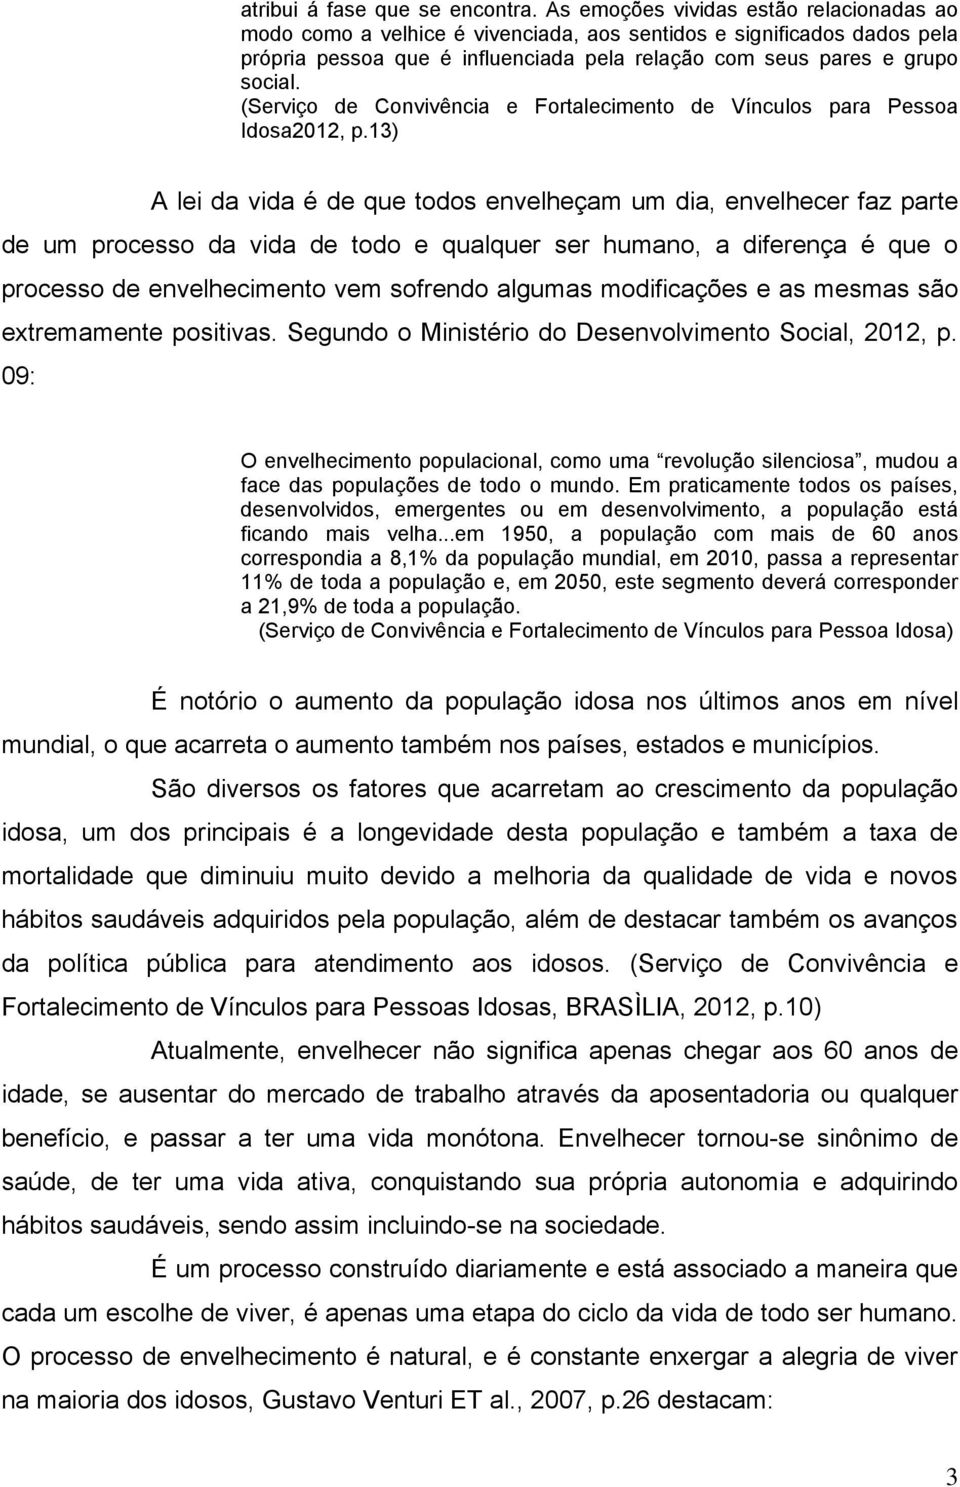 (Serviço de Convivência e Fortalecimento de Vínculos para Pessoa Idosa2012, p.